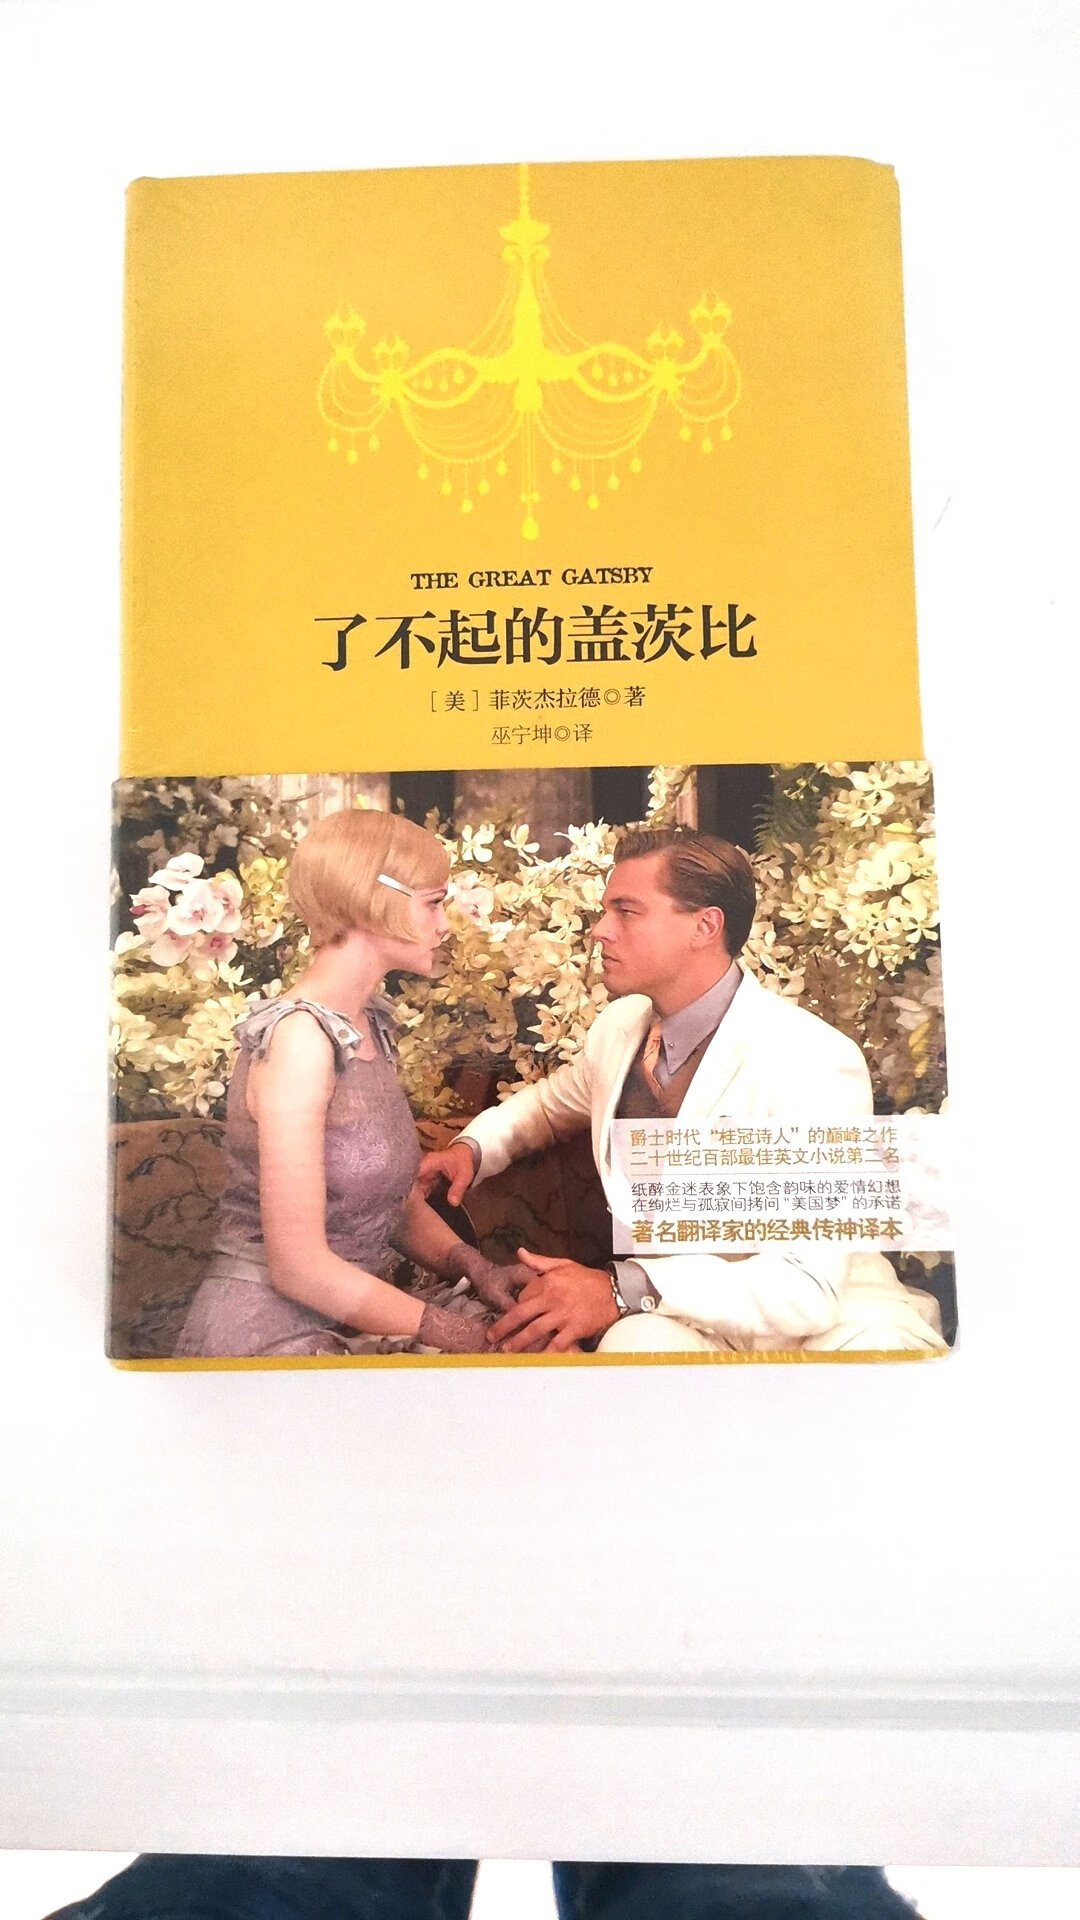 中英双语版，一份价格两本书